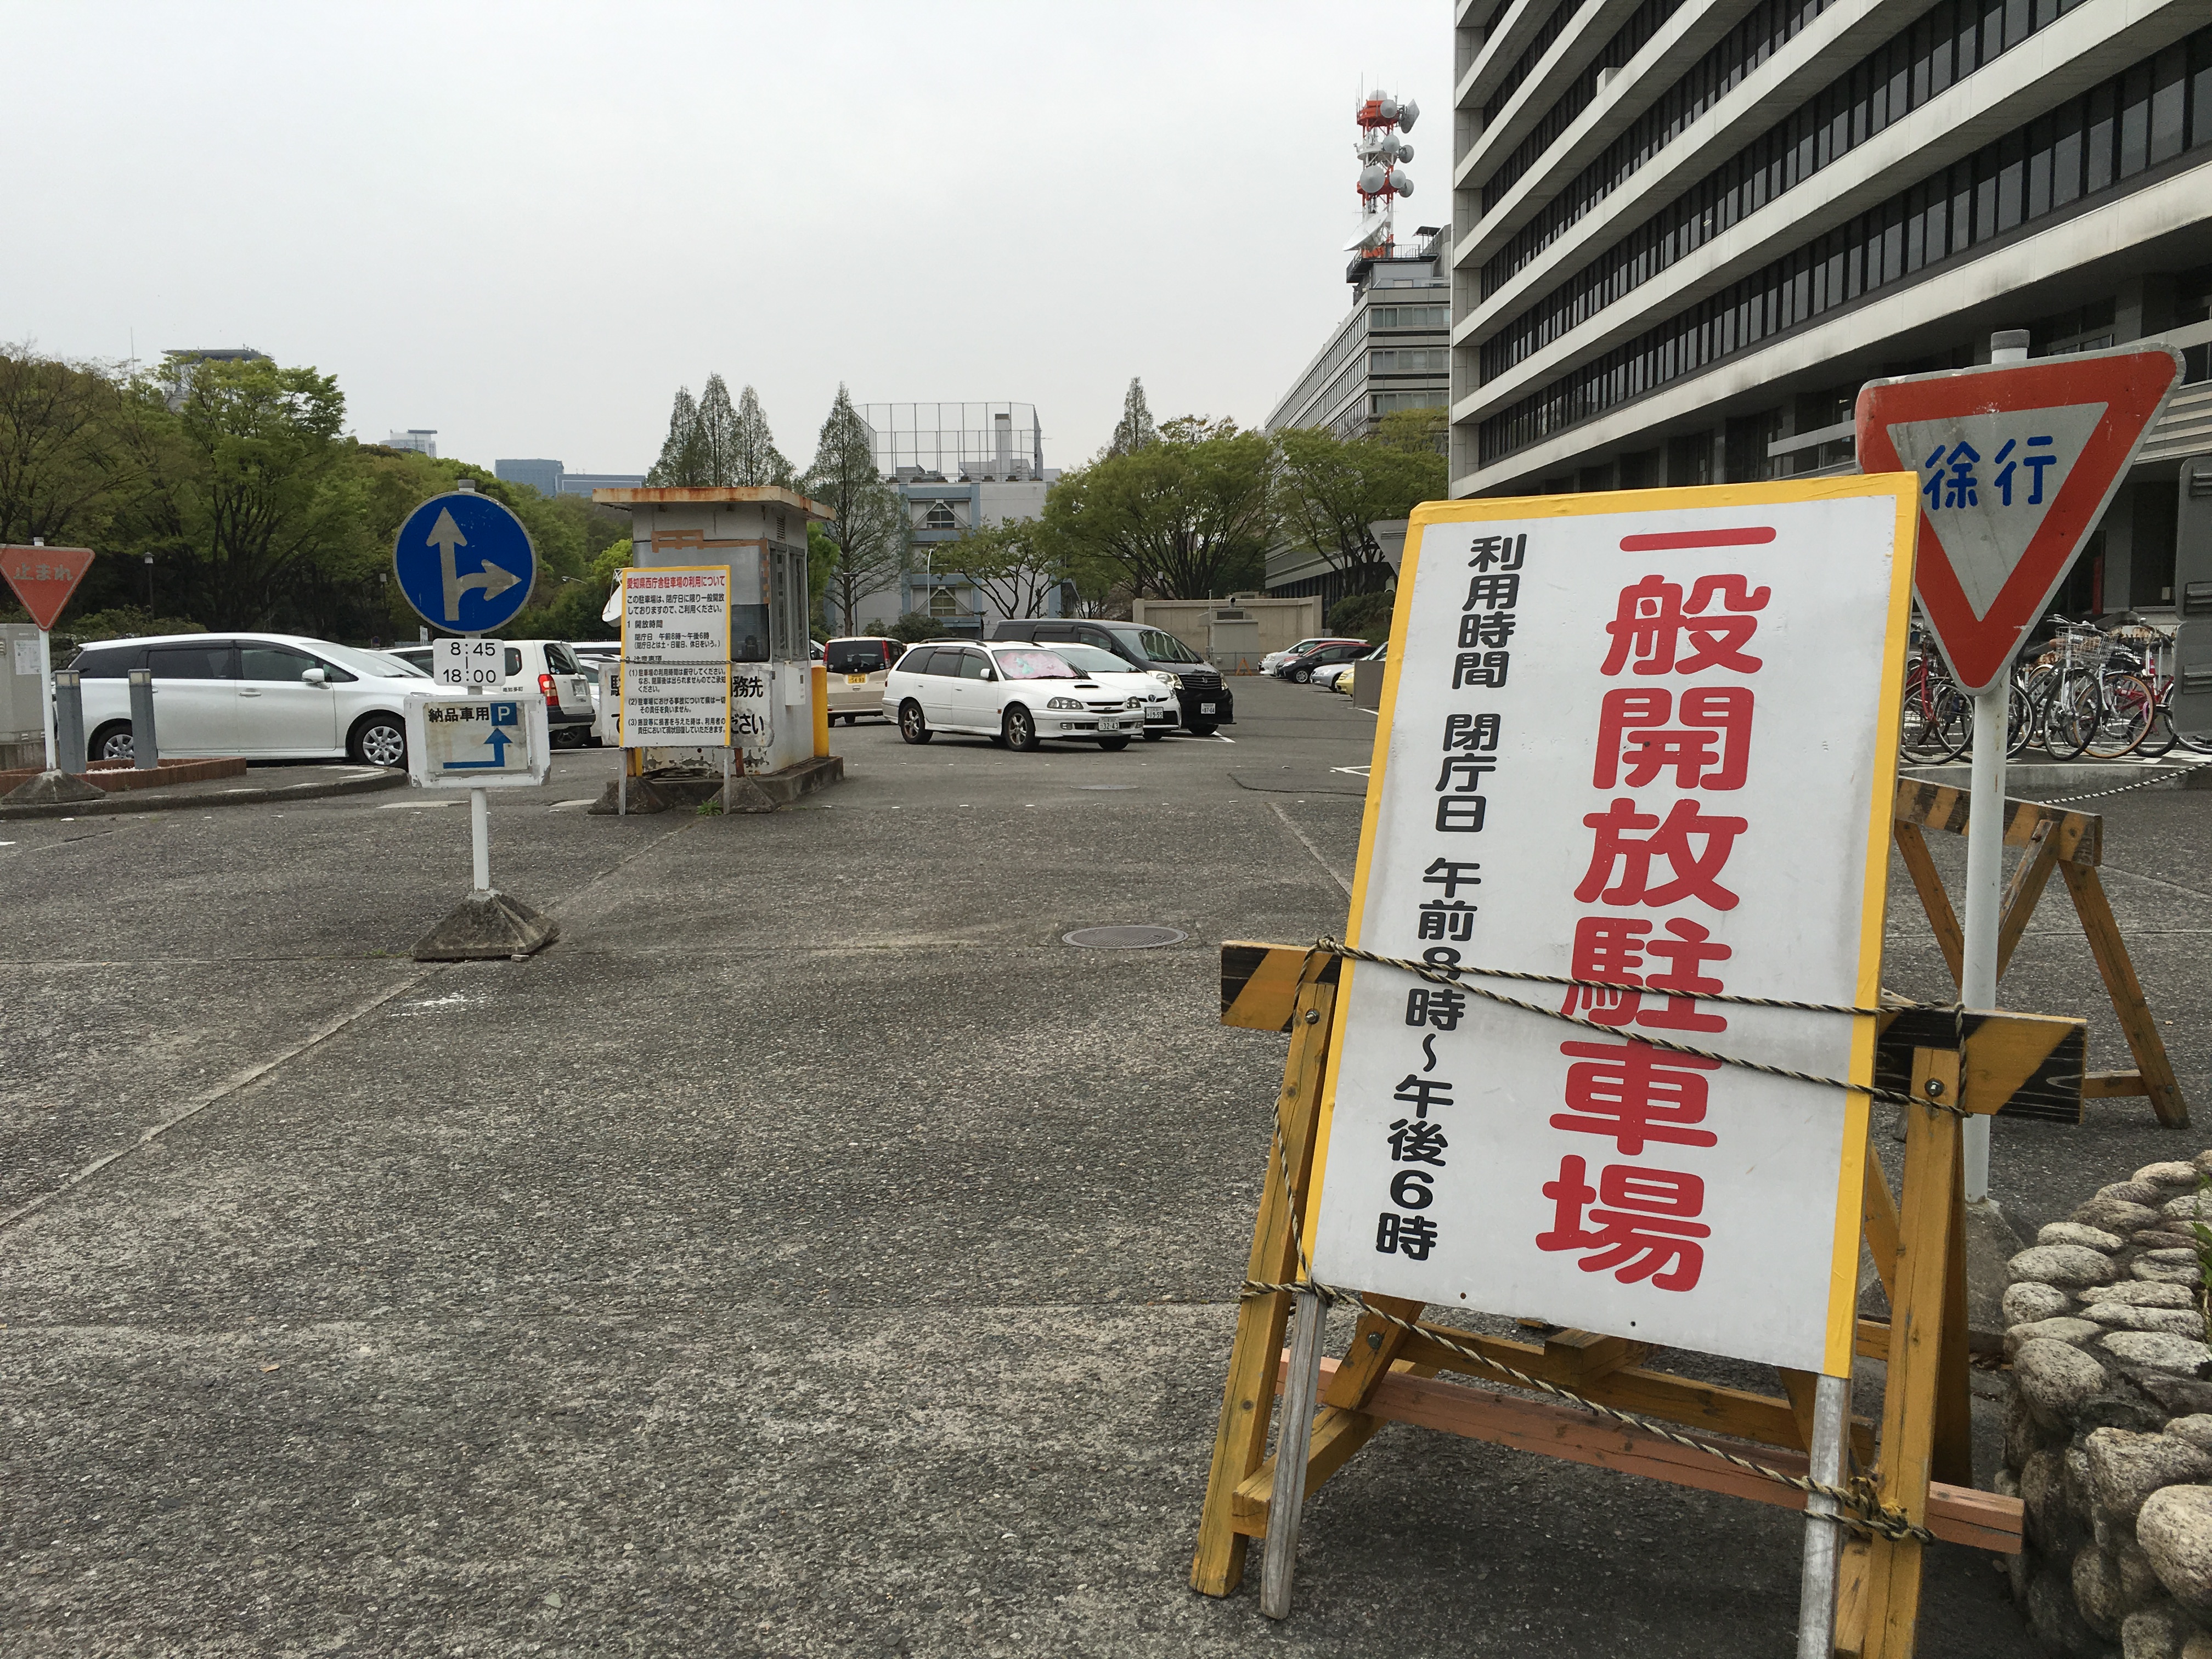 名古屋城 本丸御殿 周辺の駐車場を徹底公開 お知らせ曼荼羅